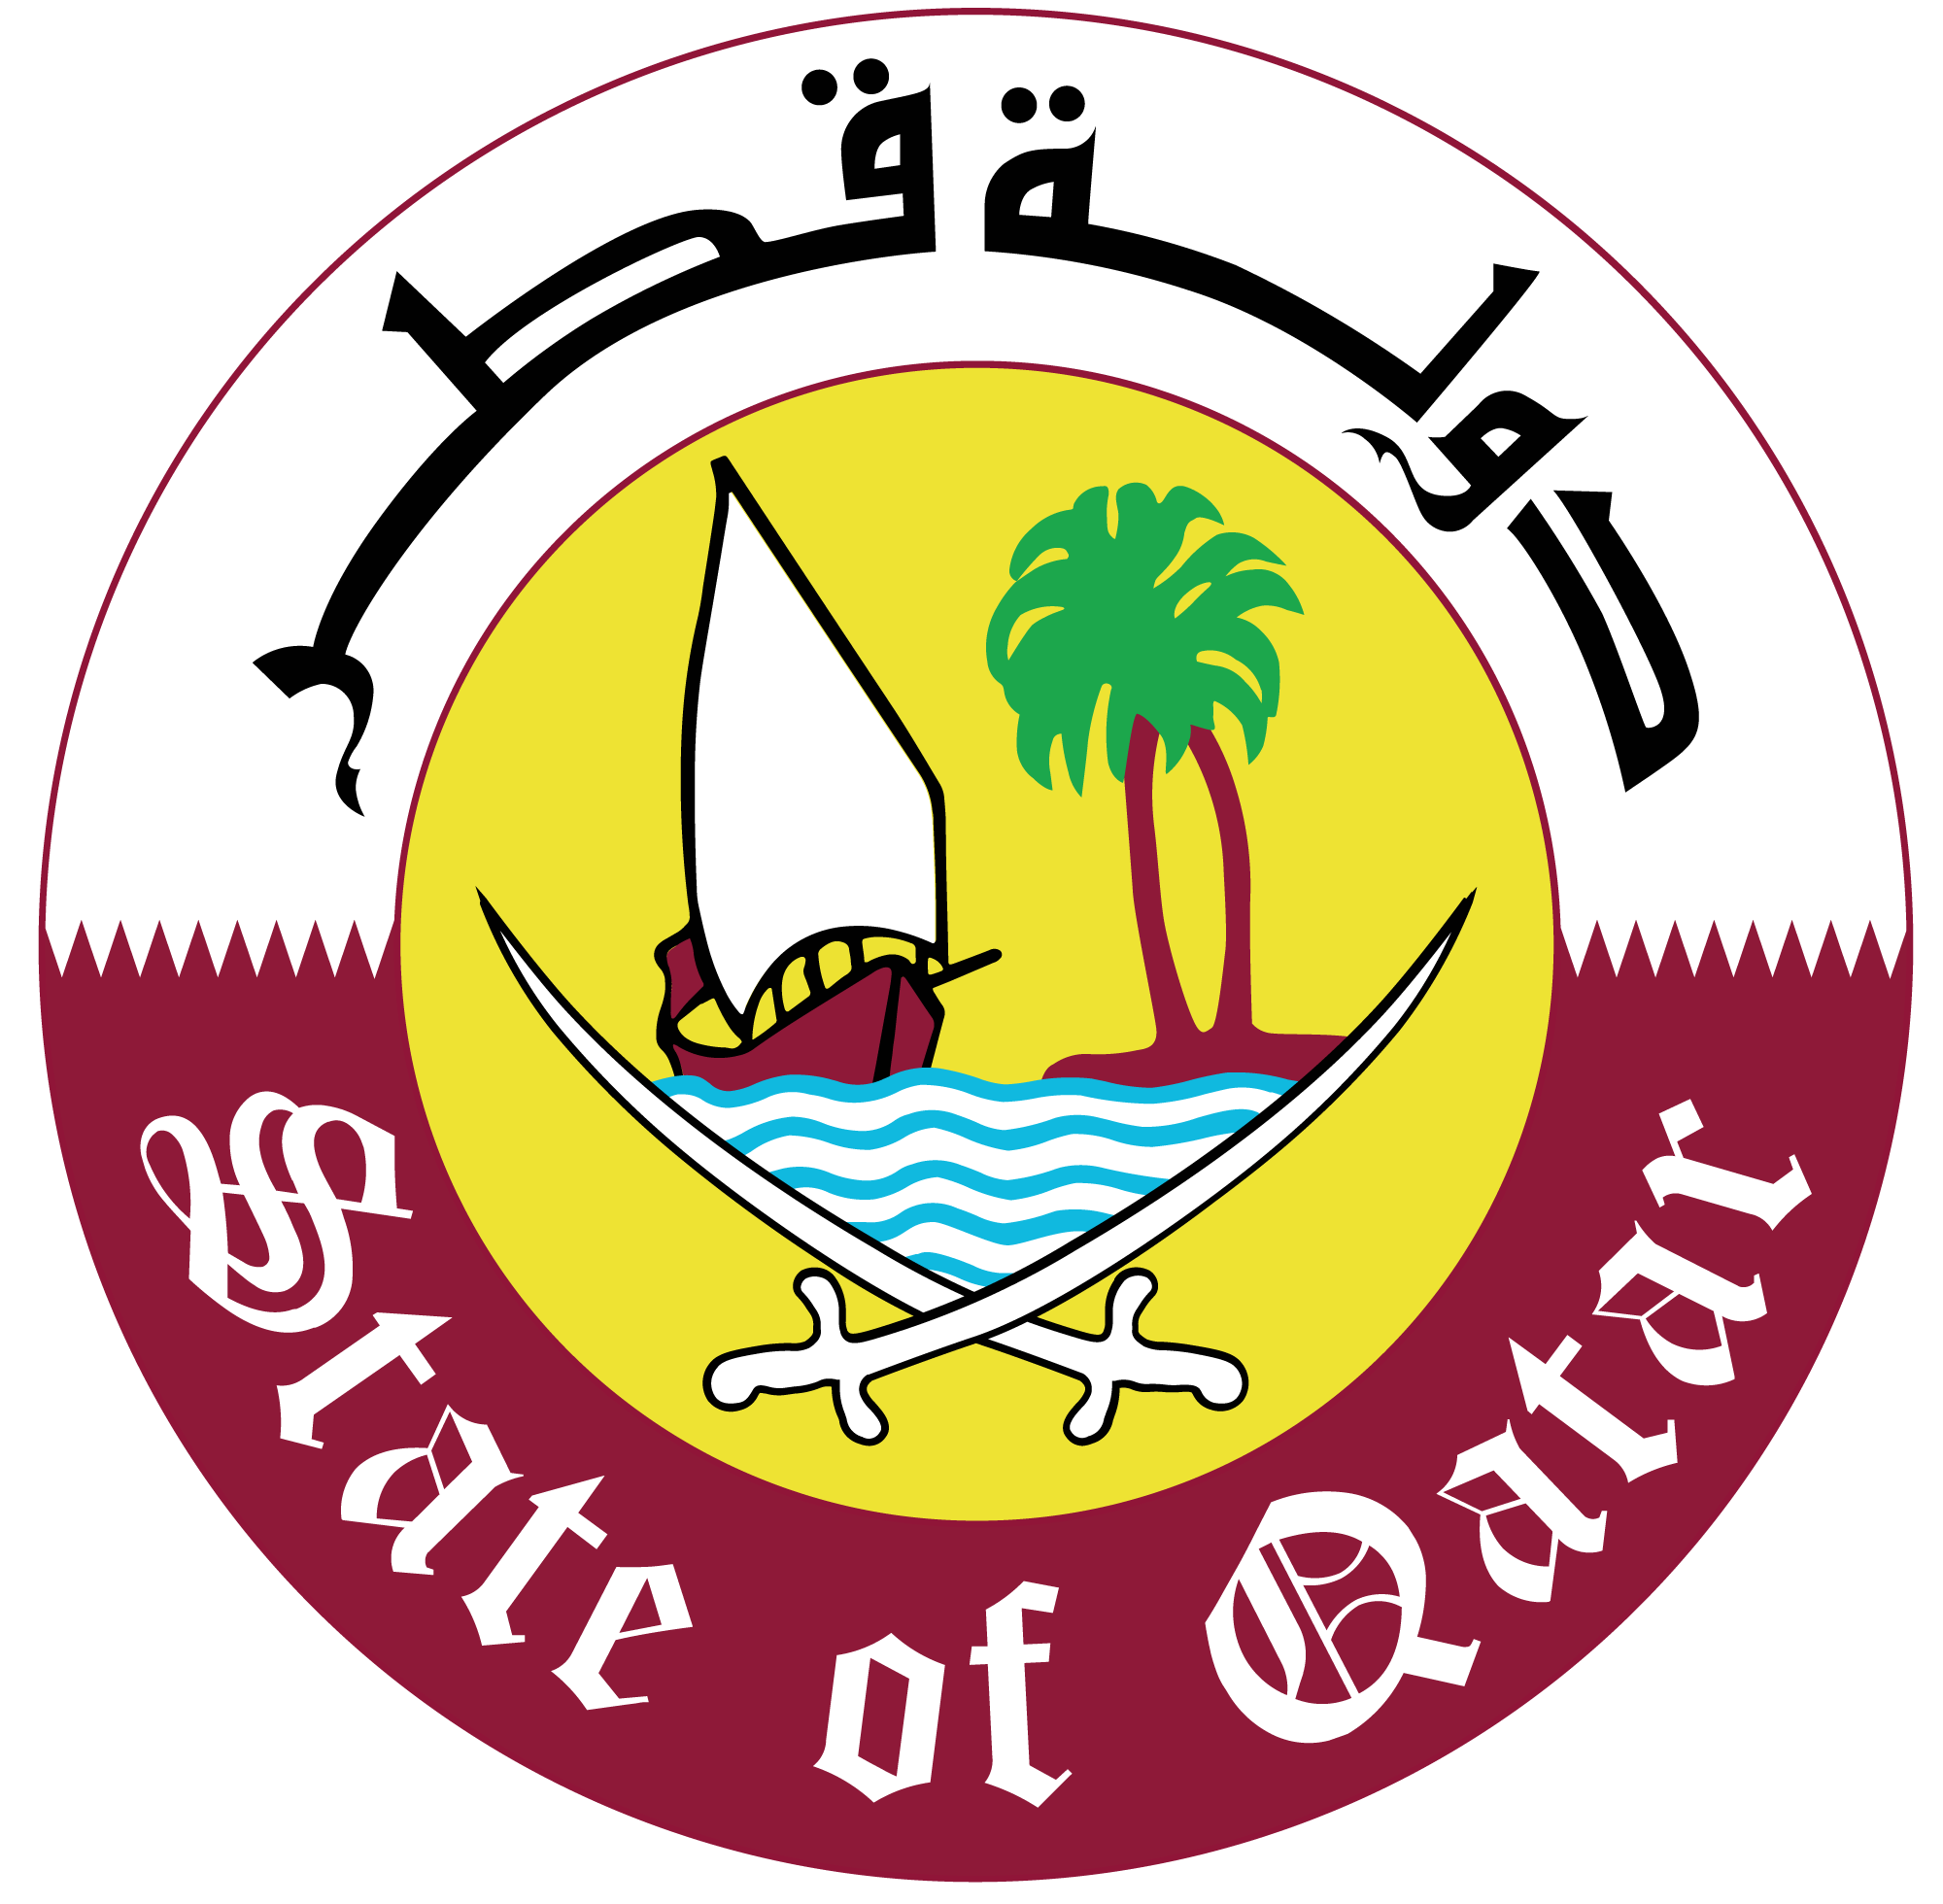 Simbolo De Qatar 2022